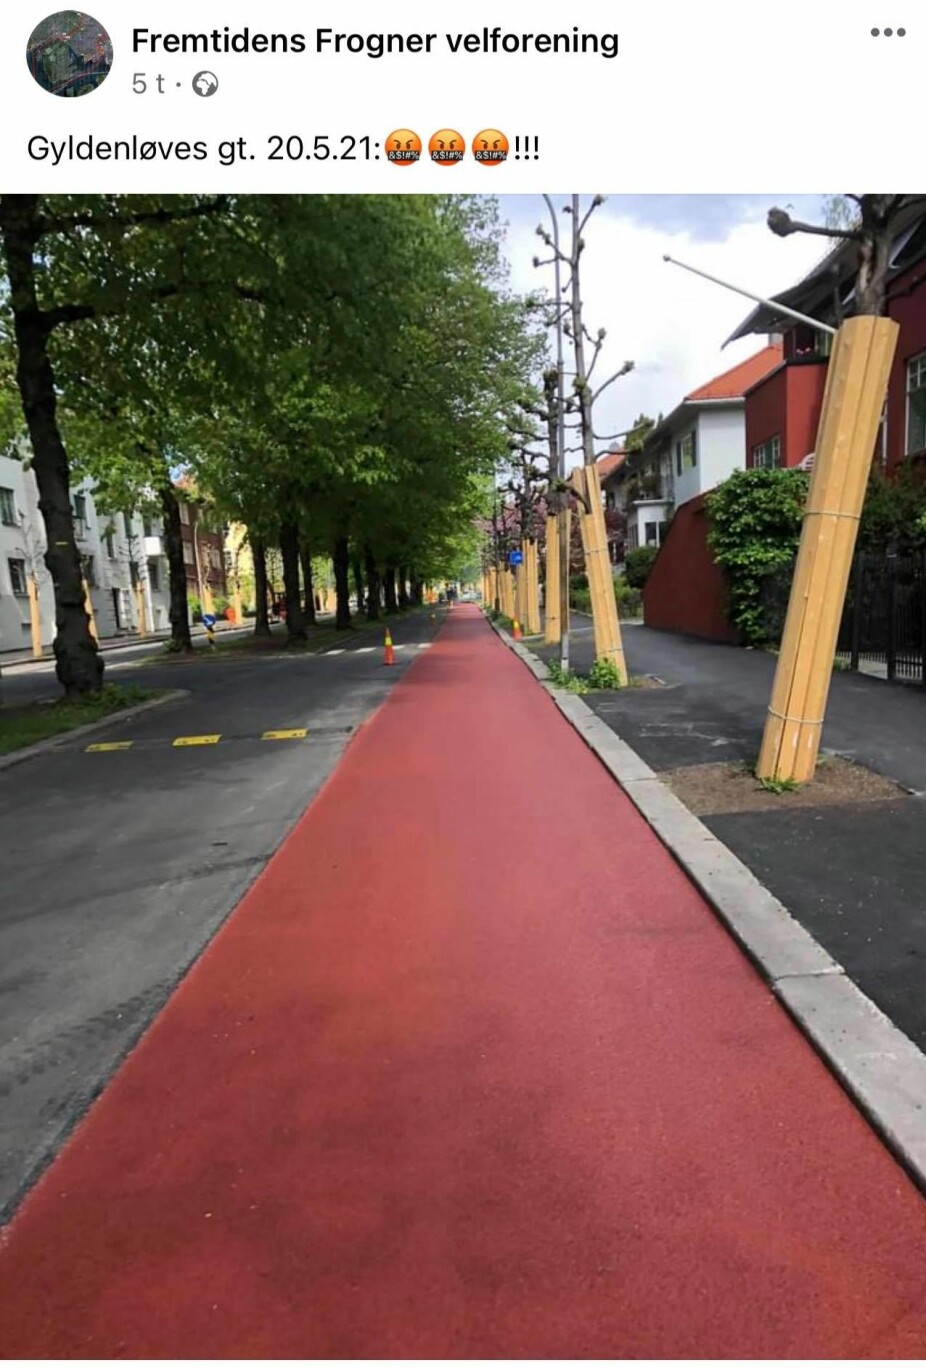 IKKE FORNØYD: Kommentarfeltet i Facebook-gruppen 'Fremtidens Frogner Velforening' koker under dette bildet av den nye sykkelveien i Gyldenløves gate.